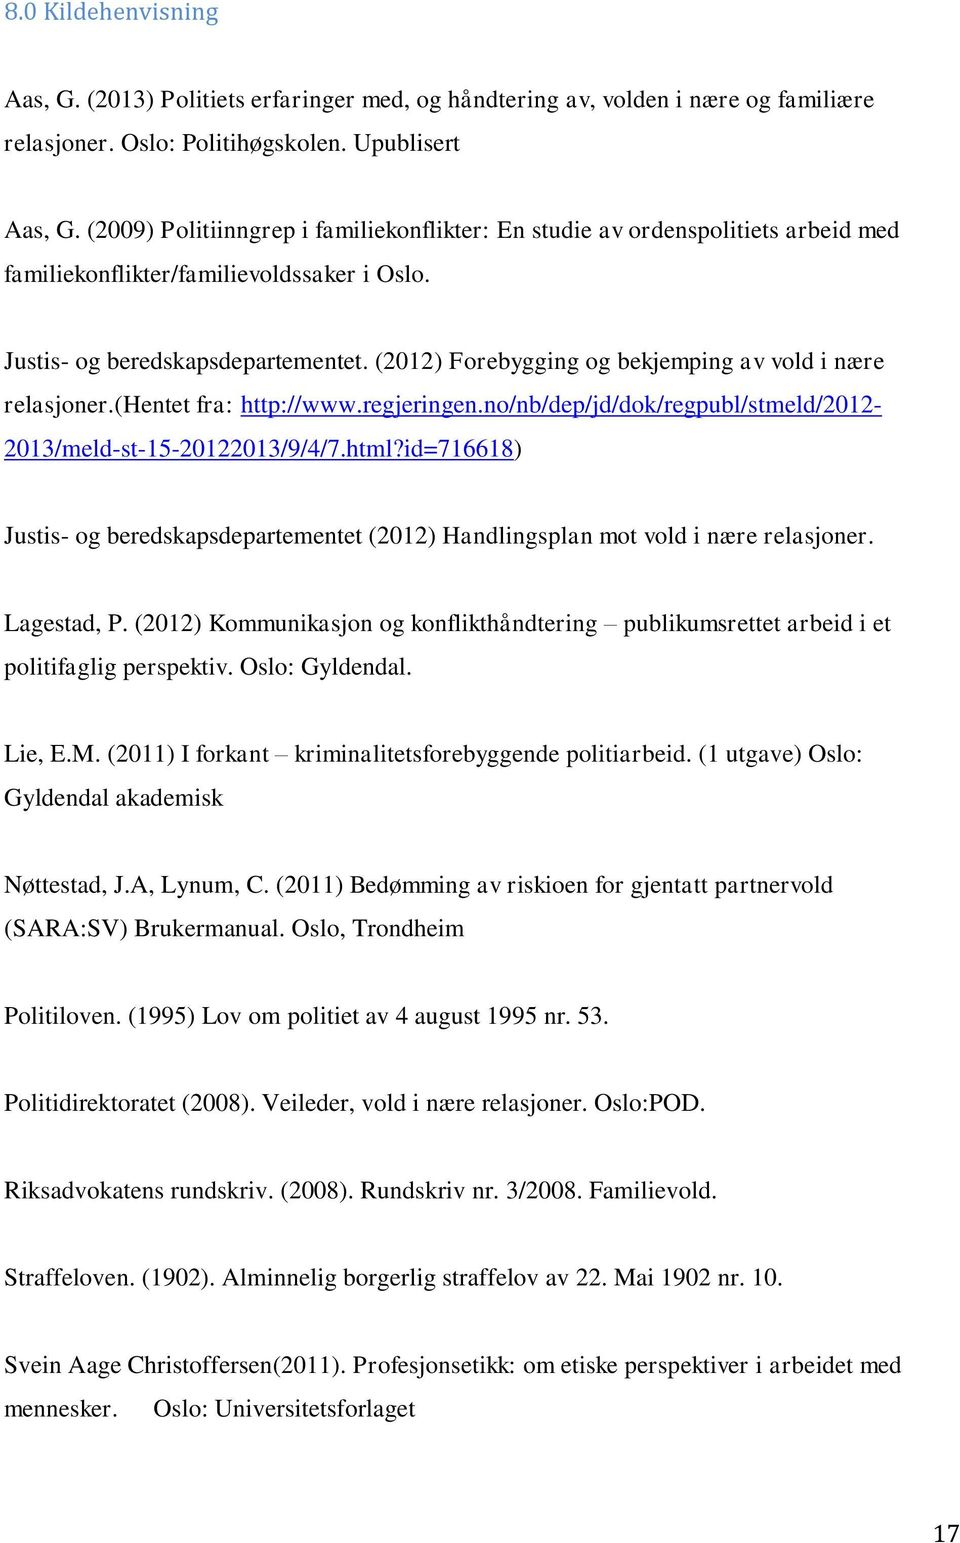 (2012) Forebygging og bekjemping av vold i nære relasjoner.(hentet fra: http://www.regjeringen.no/nb/dep/jd/dok/regpubl/stmeld/2012-2013/meld-st-15-20122013/9/4/7.html?